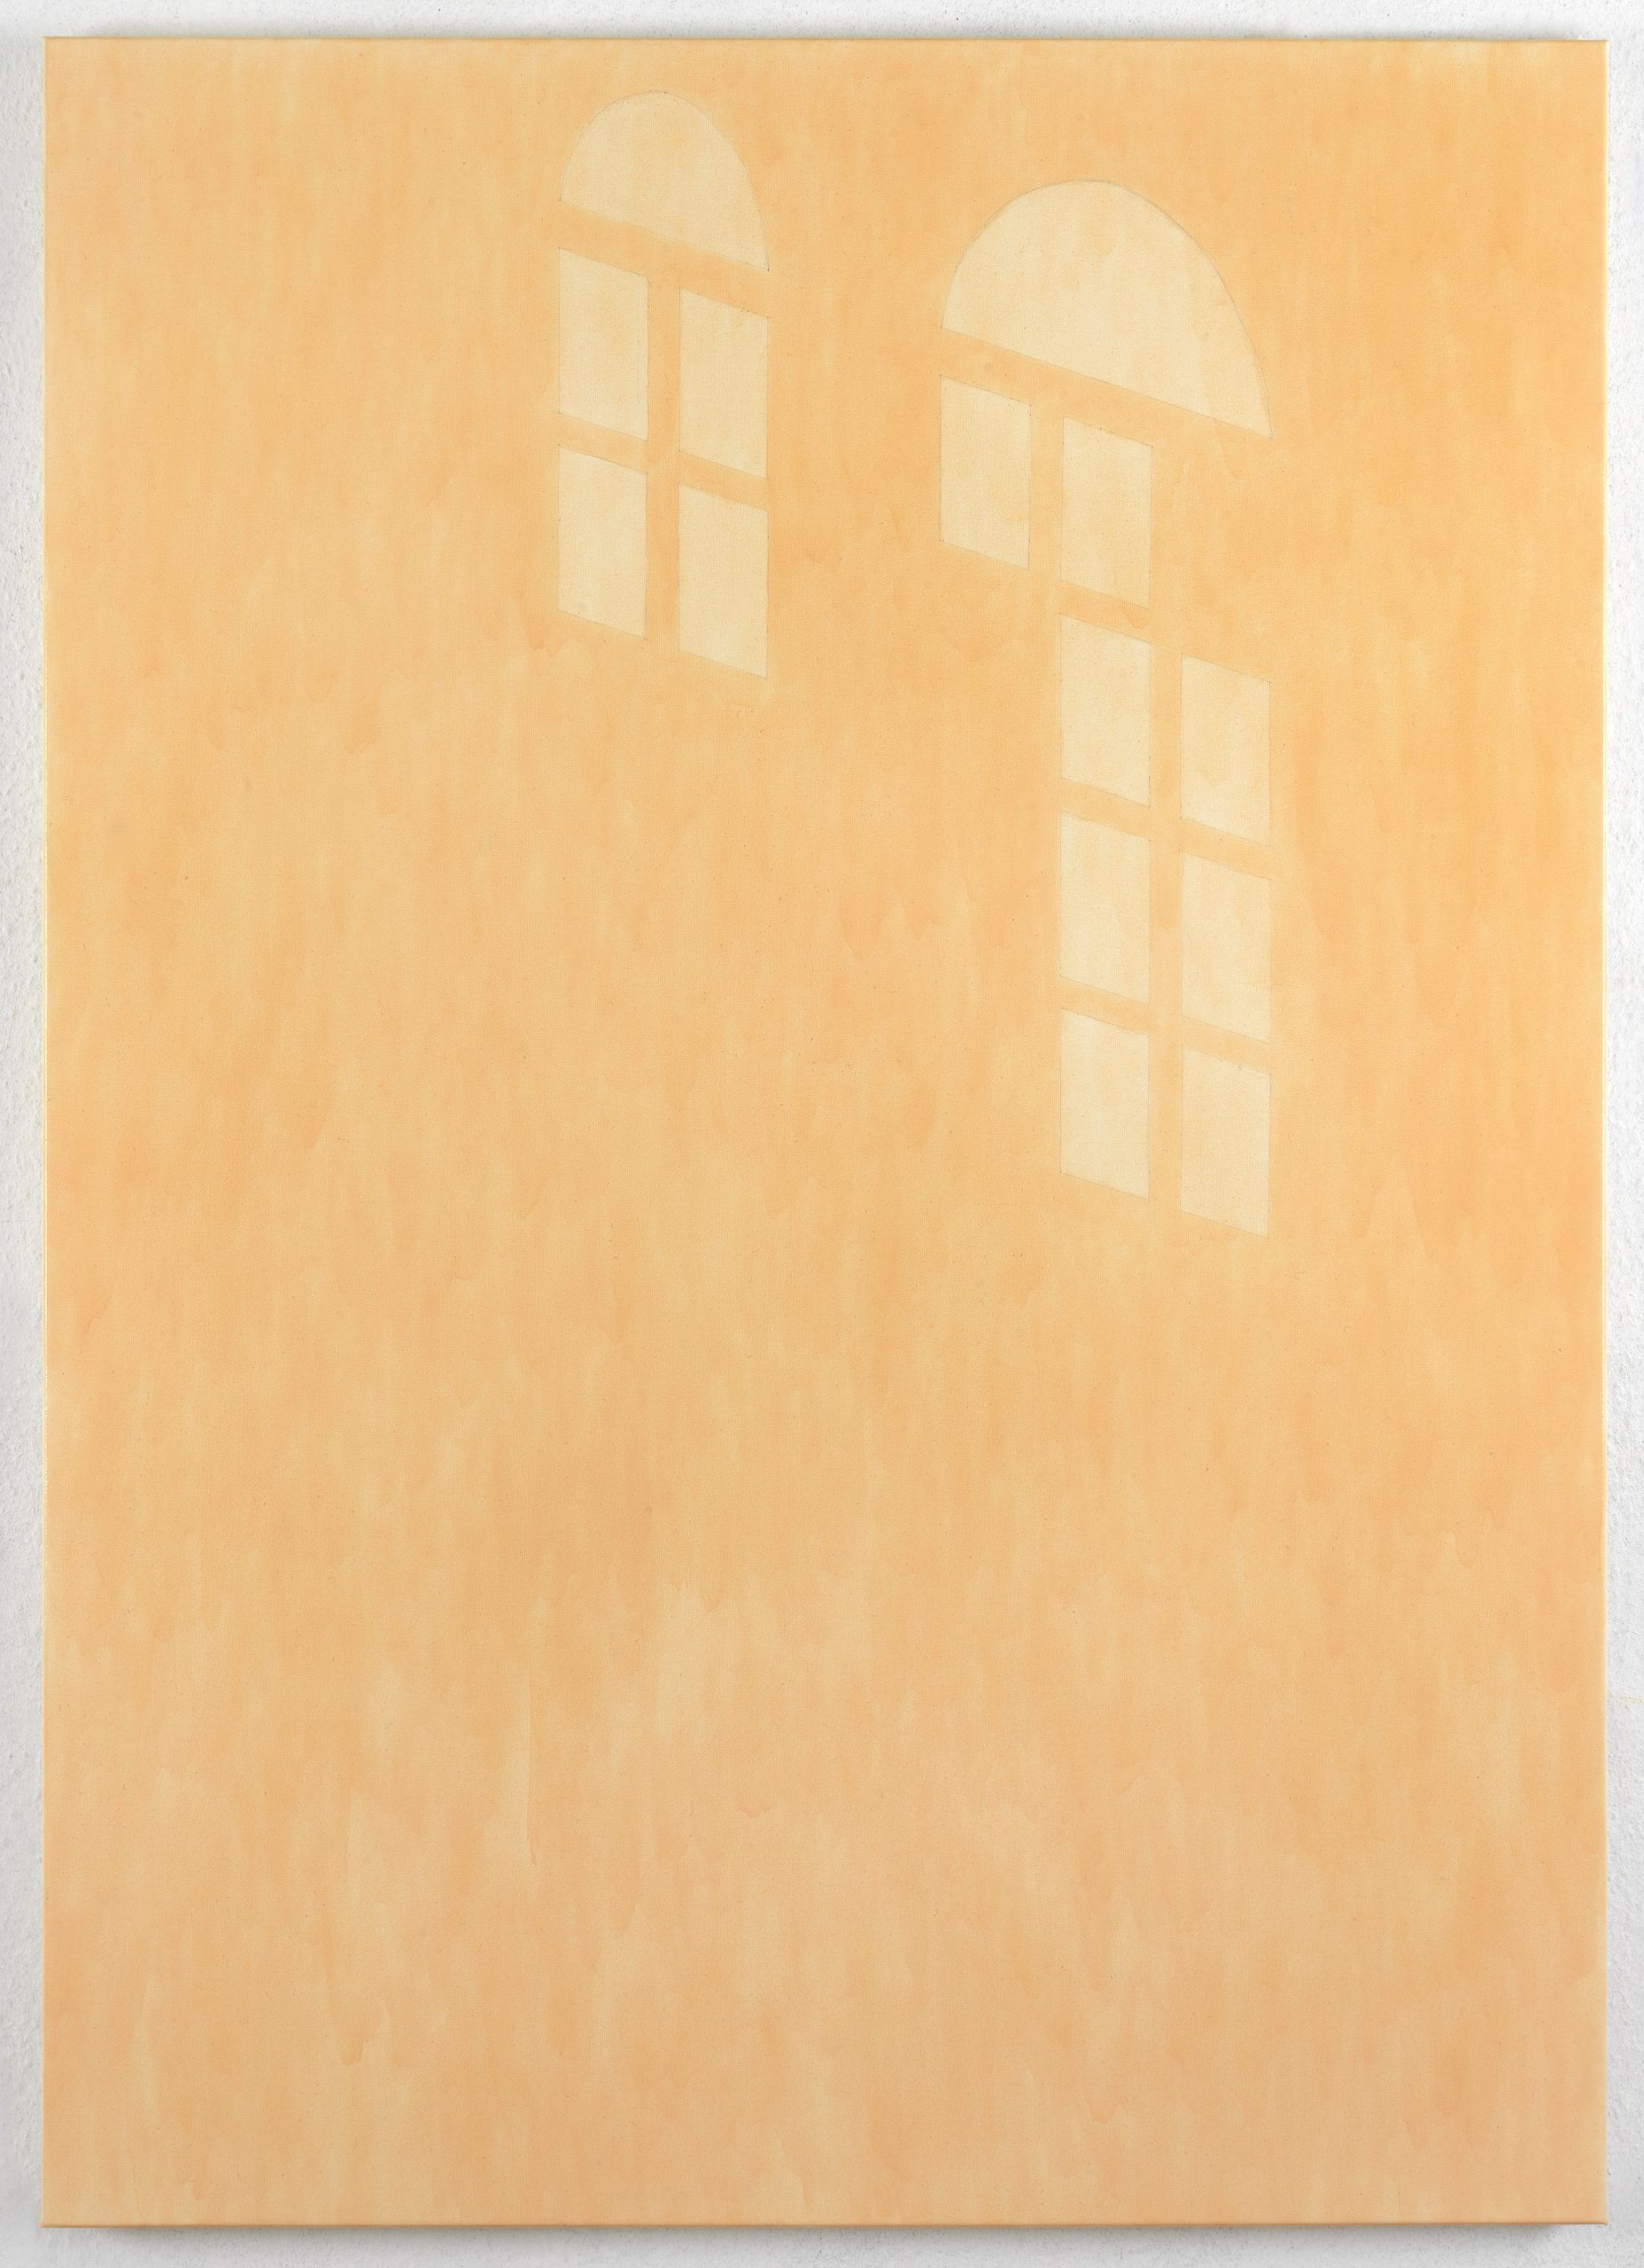 Evelyn Taocheng Wang, Dutch Window No.4 / 7 Layers, 2020